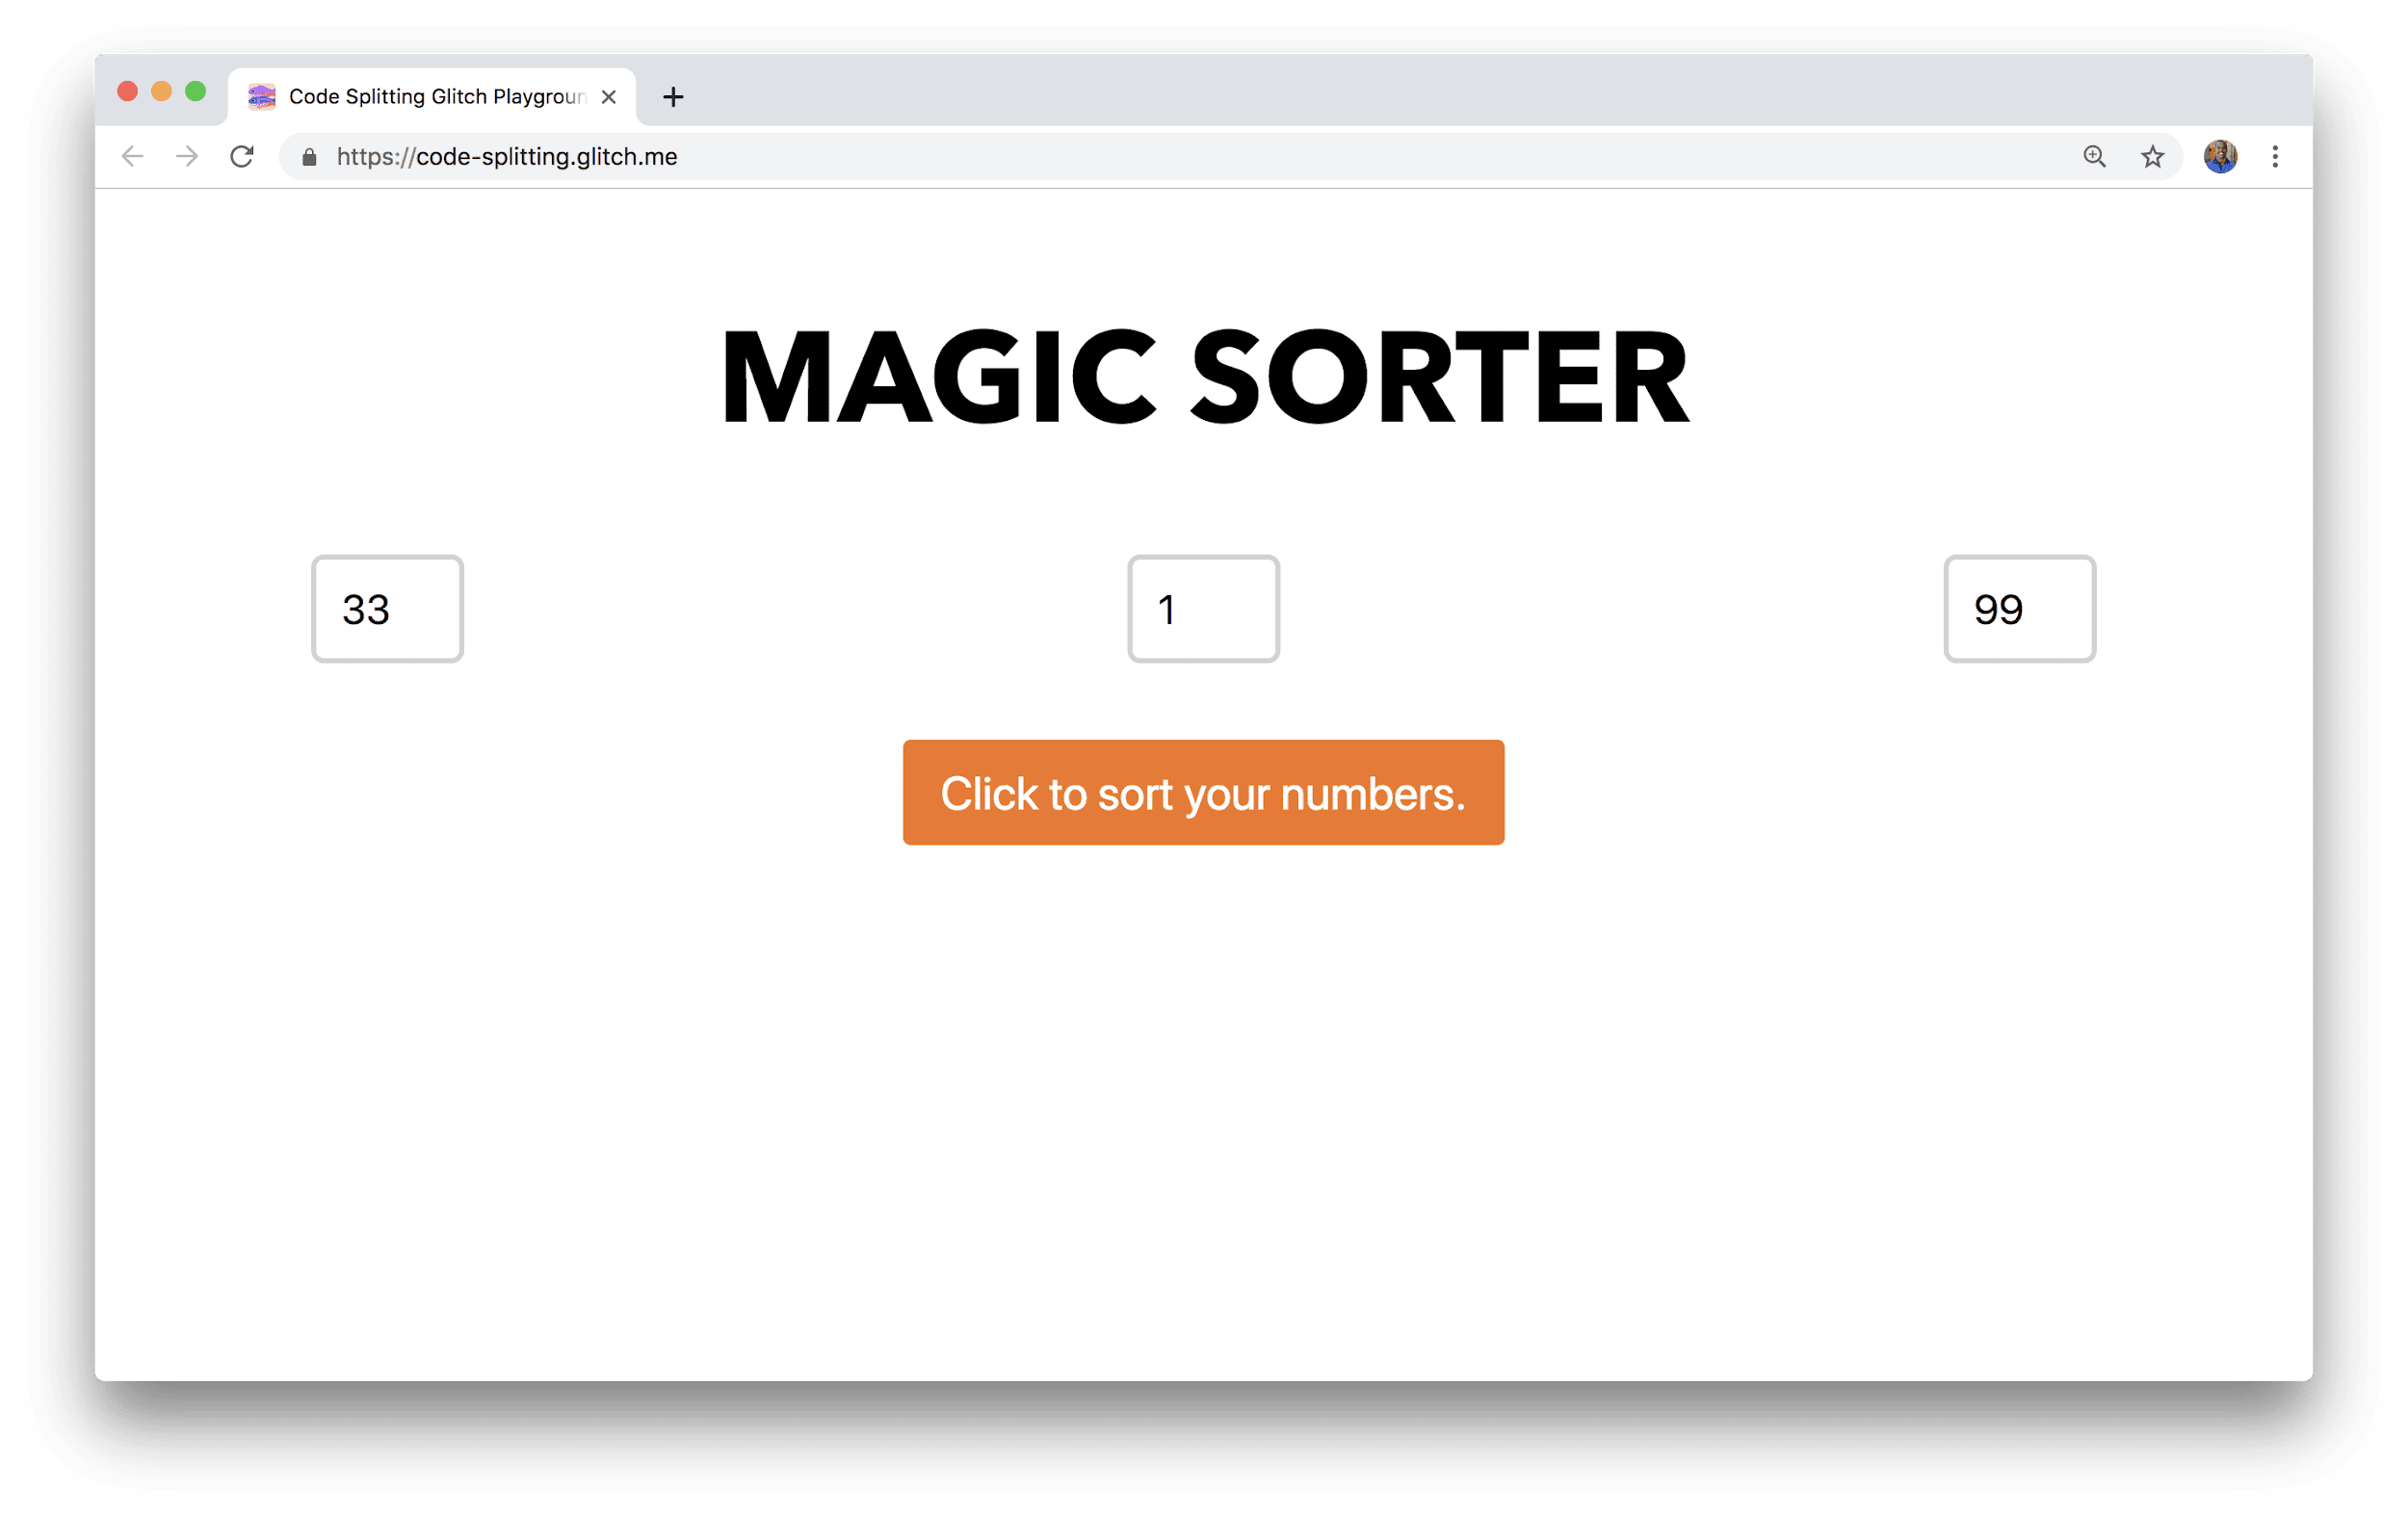 Một cửa sổ trình duyệt cho thấy một ứng dụng có tên là Magic Sorter, trong đó có 3 trường để nhập số và nút sắp xếp.